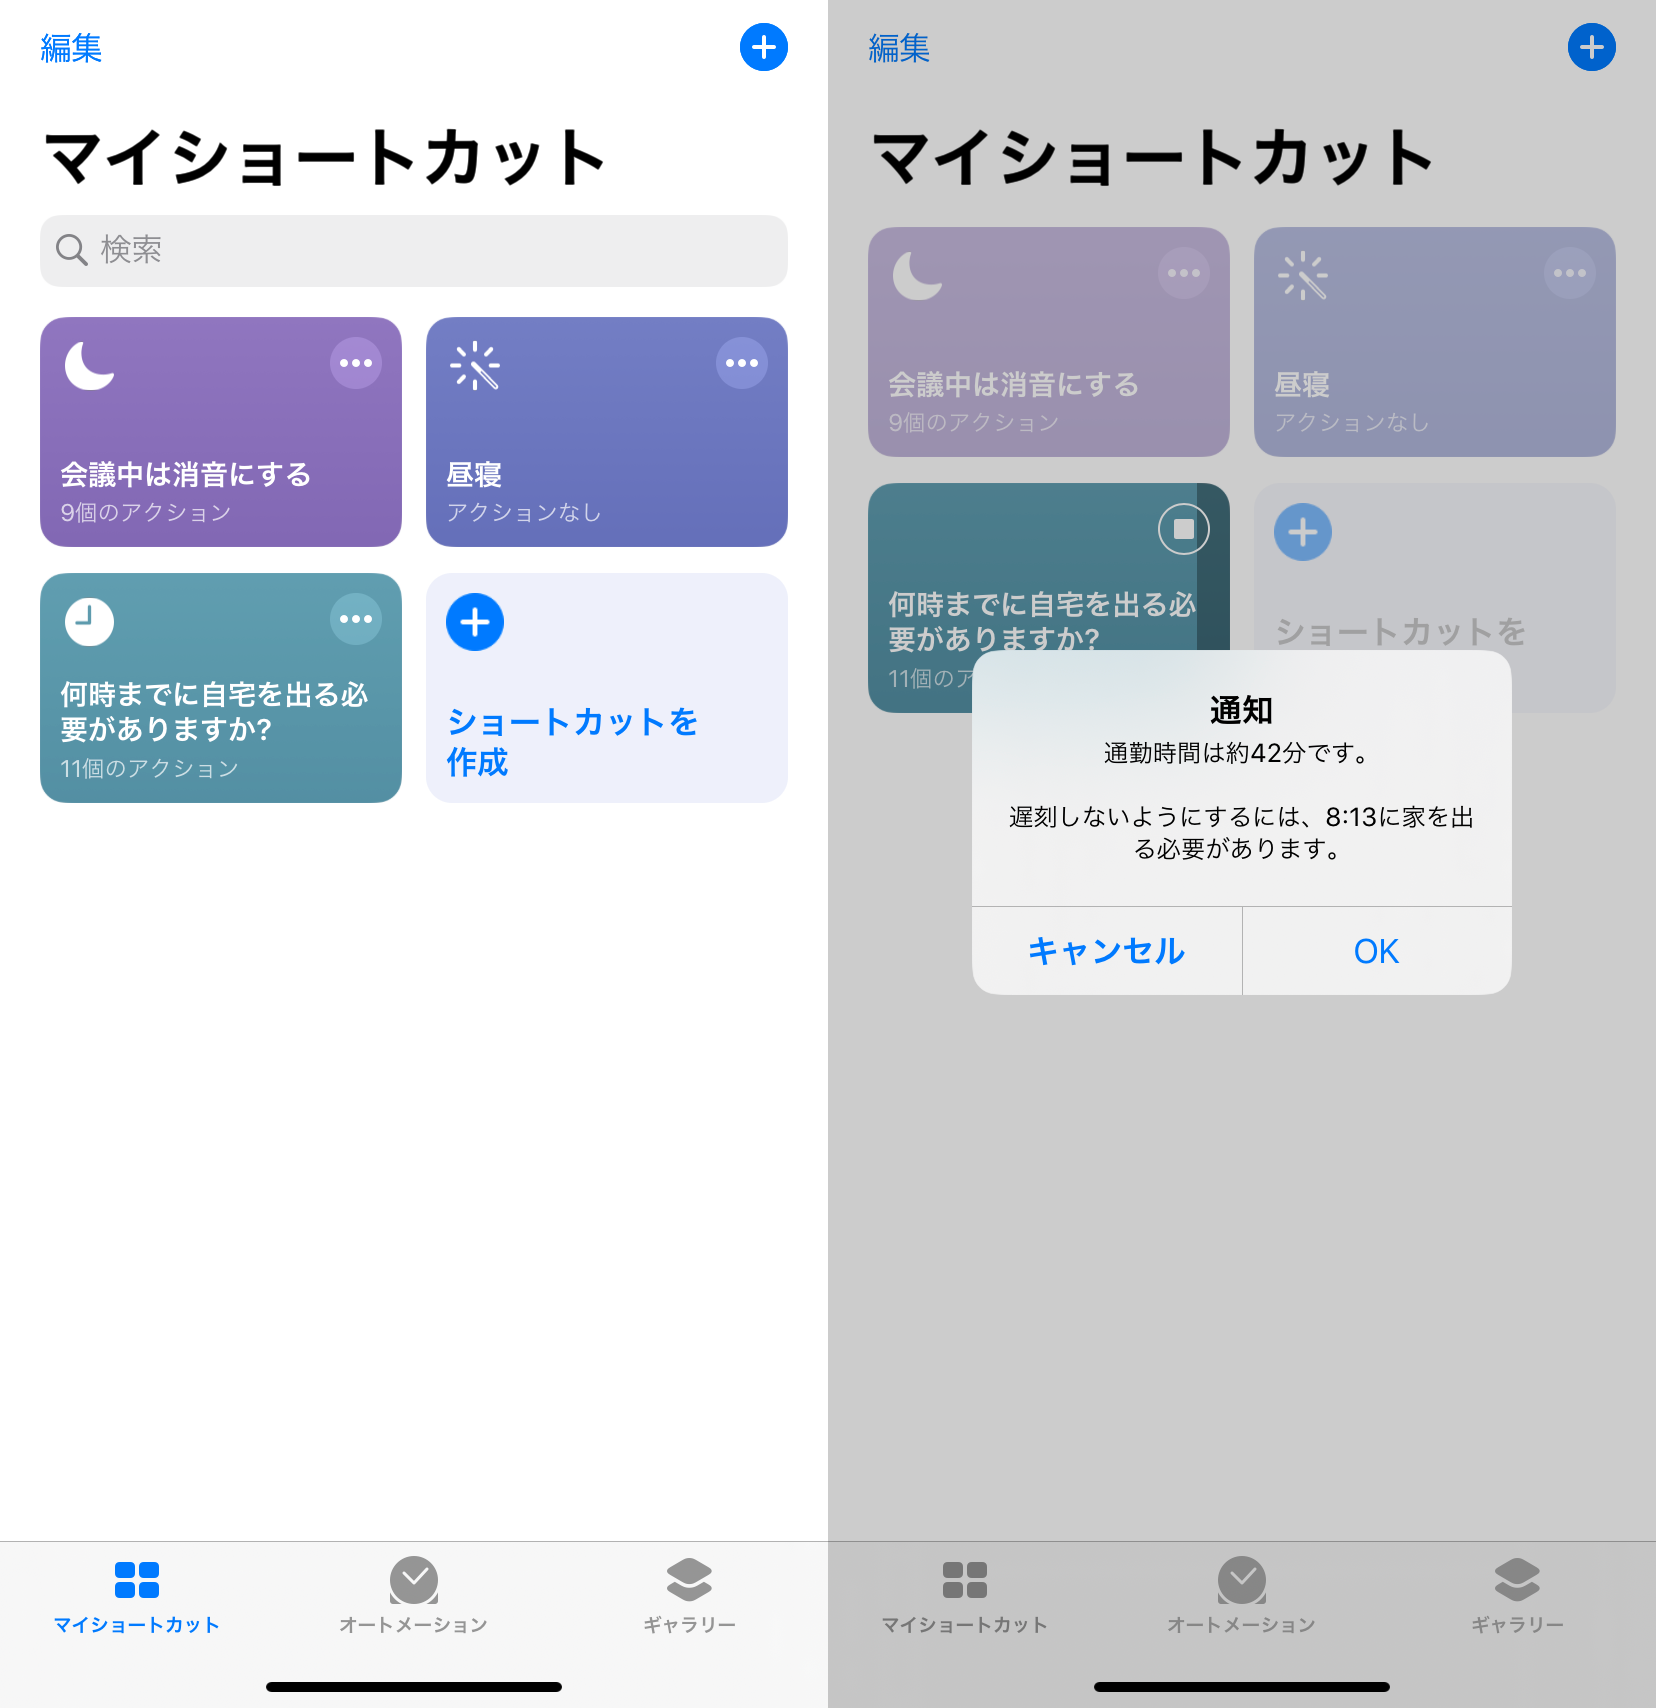 何時までに家を出れば目的地に間に合うの をiphoneに考えてもらおう Iphone Tips Engadget 日本版